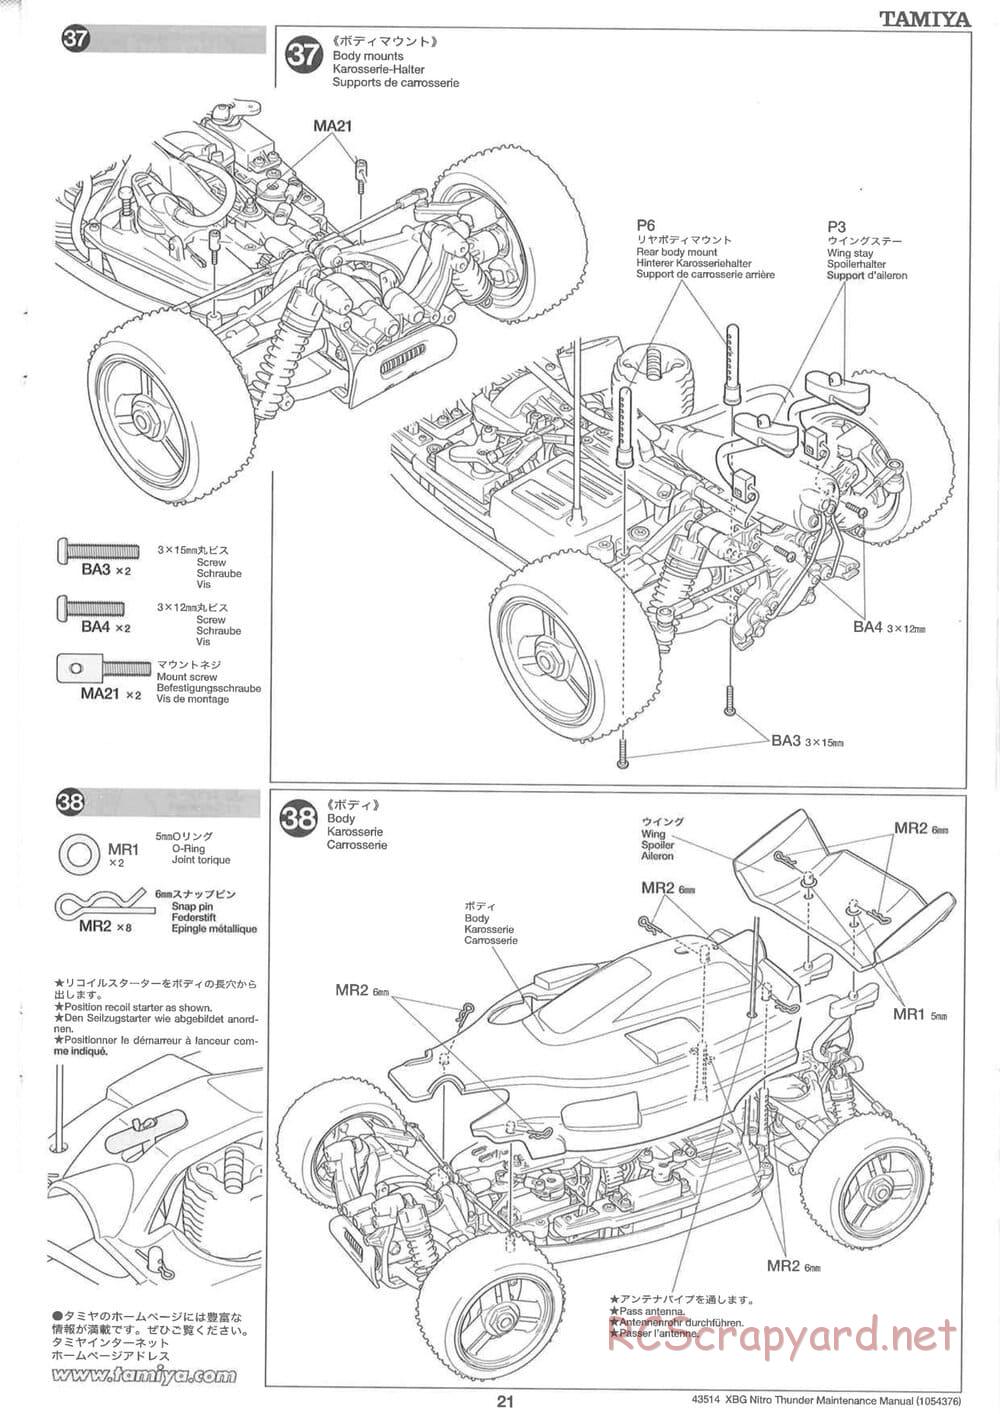 Tamiya - Nitro Thunder - NDF-01 Chassis - Manual - Page 21